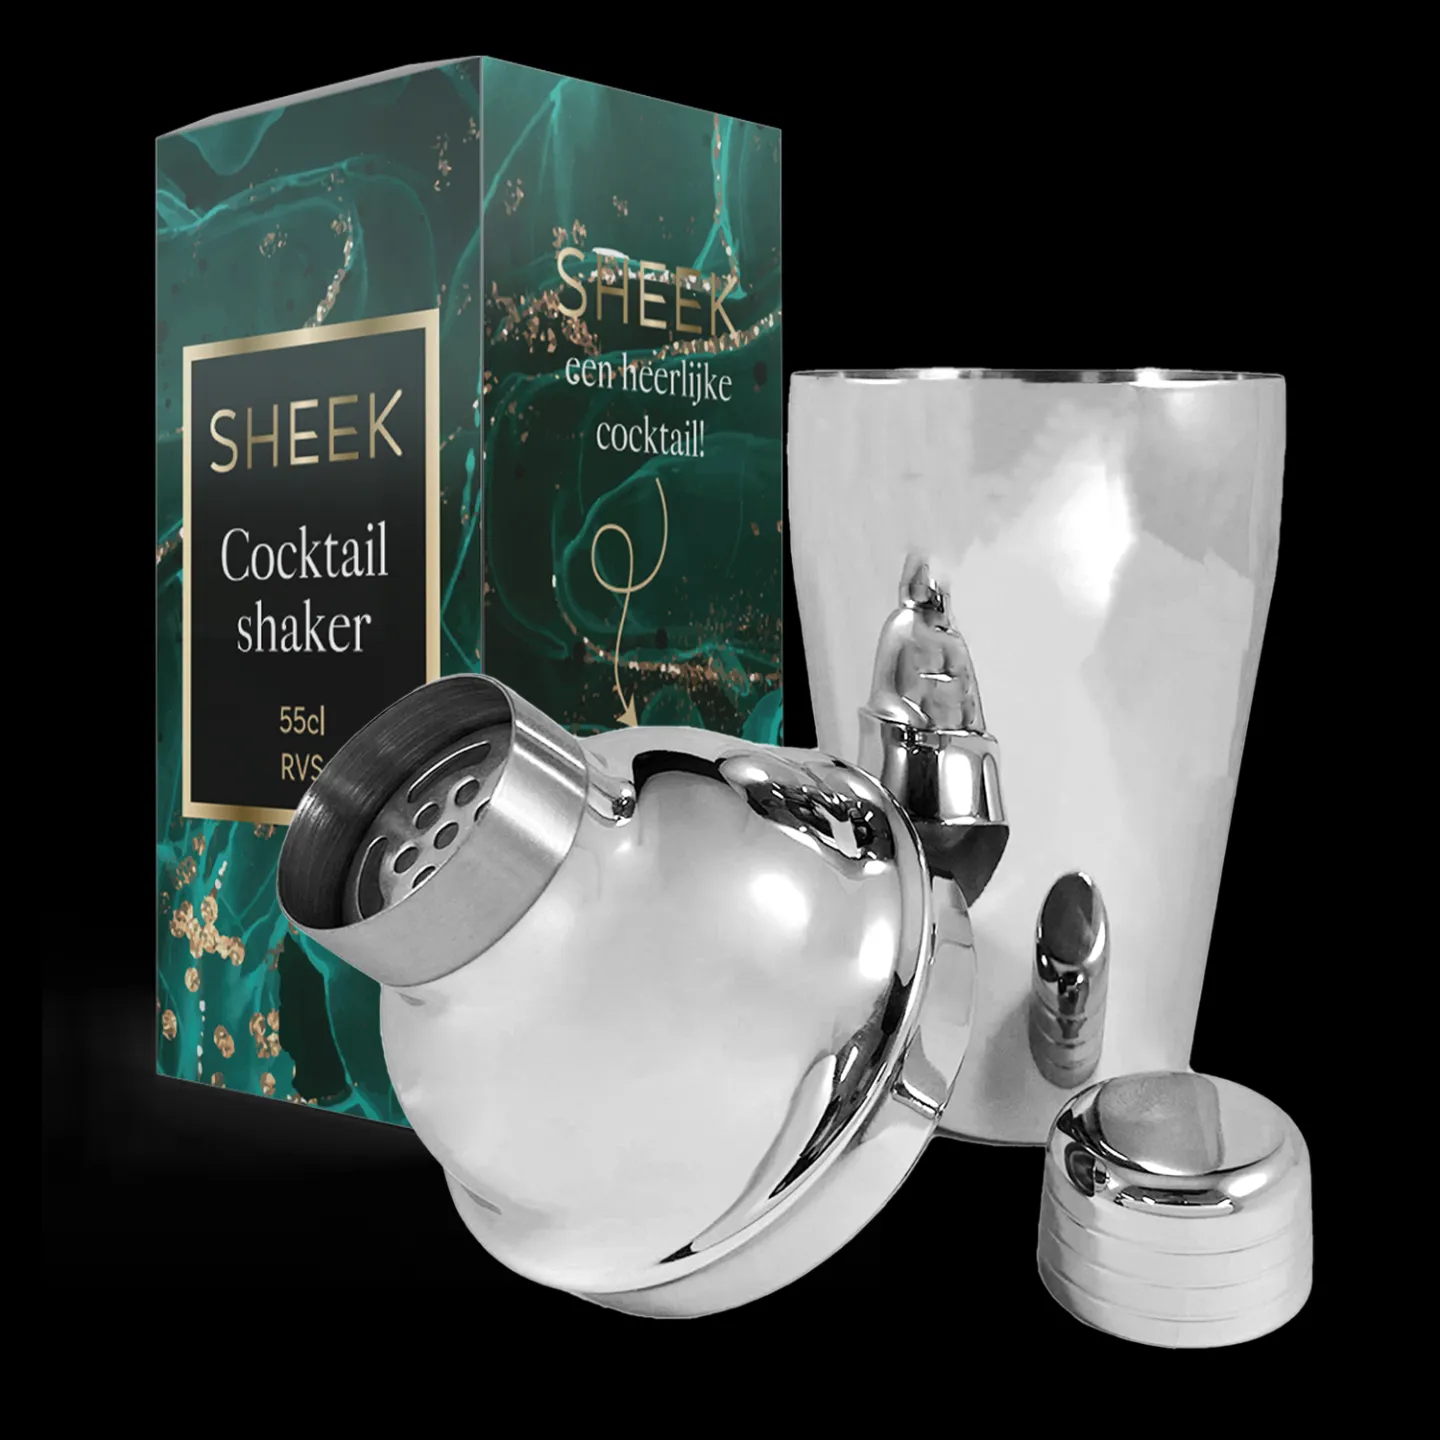 Zilveren RVS cocktailshaker 55cl.